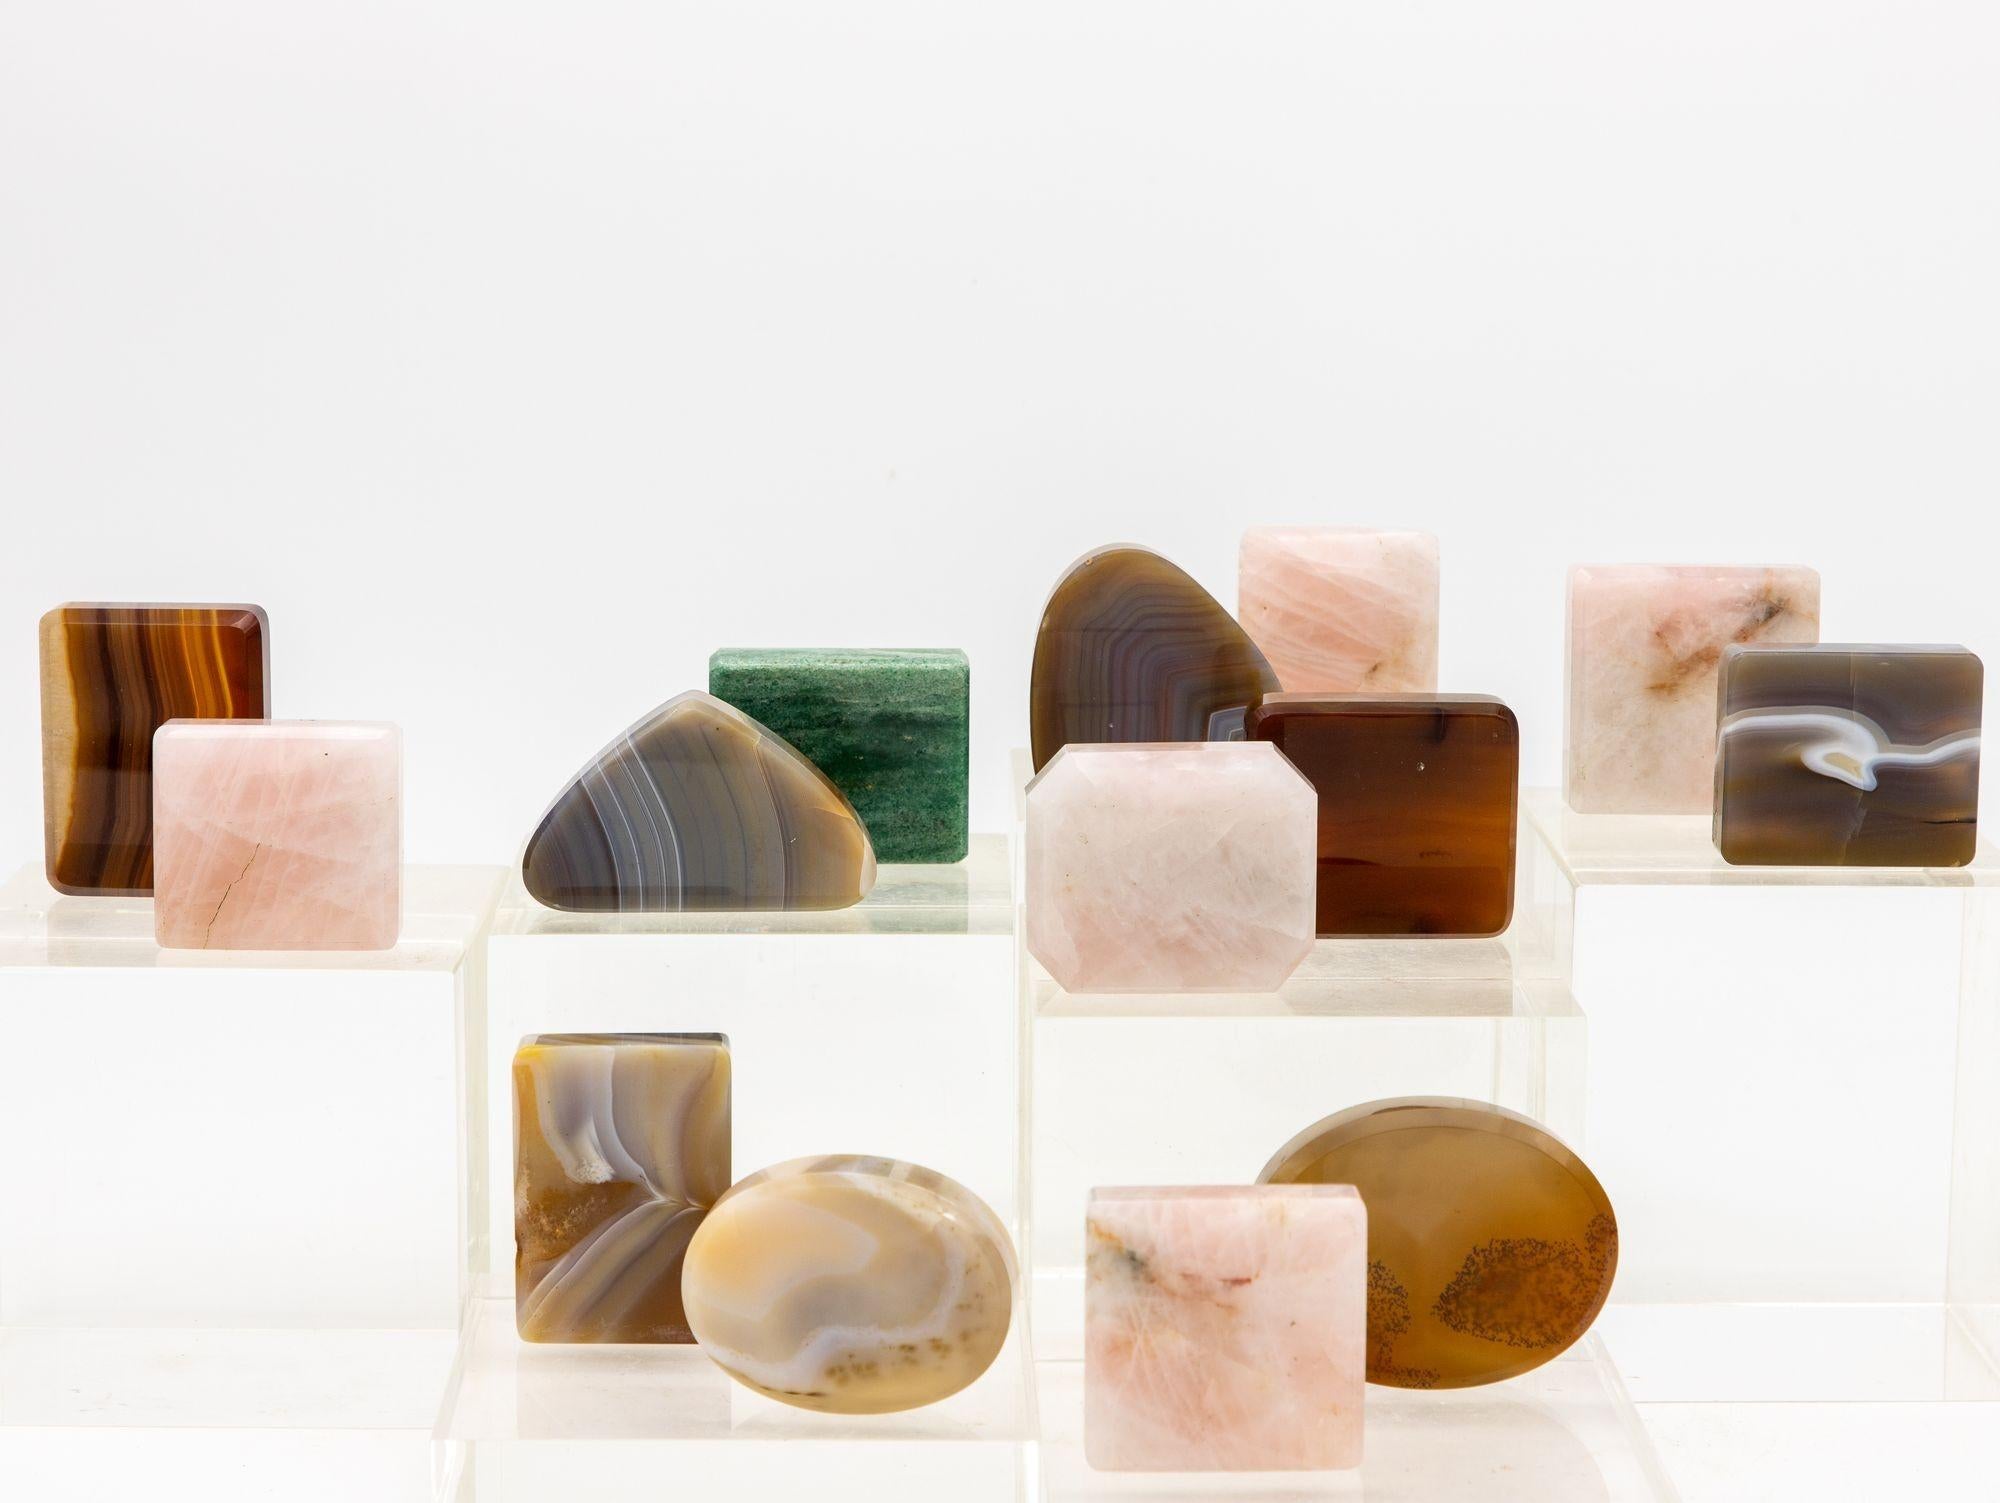 Diese exquisite Collection'S besteht aus 14 faszinierenden polierten Steinen, die aus den bezaubernden Landschaften Italiens stammen. Jeder Stein erzählt eine einzigartige Geschichte geologischer Kunstfertigkeit und zeigt das reiche Naturerbe